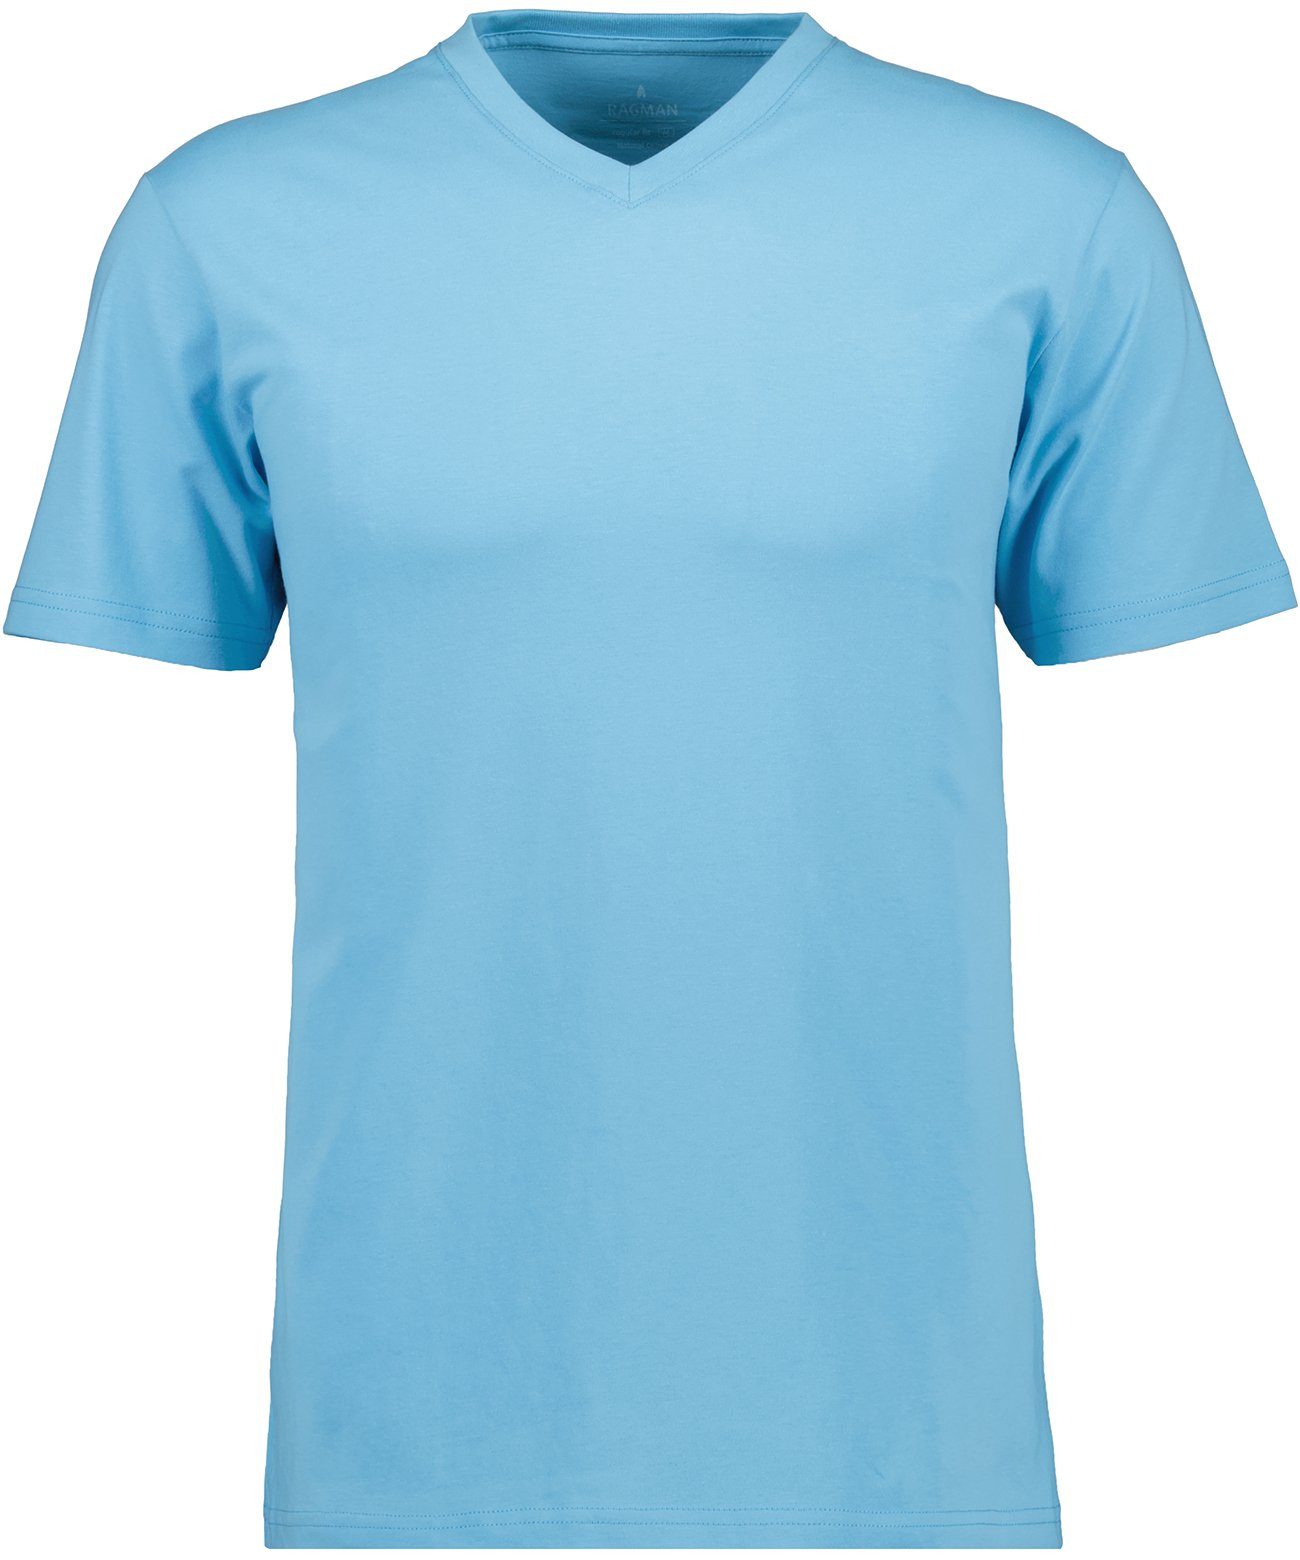 RAGMAN T-Shirt Blau-Melange-703